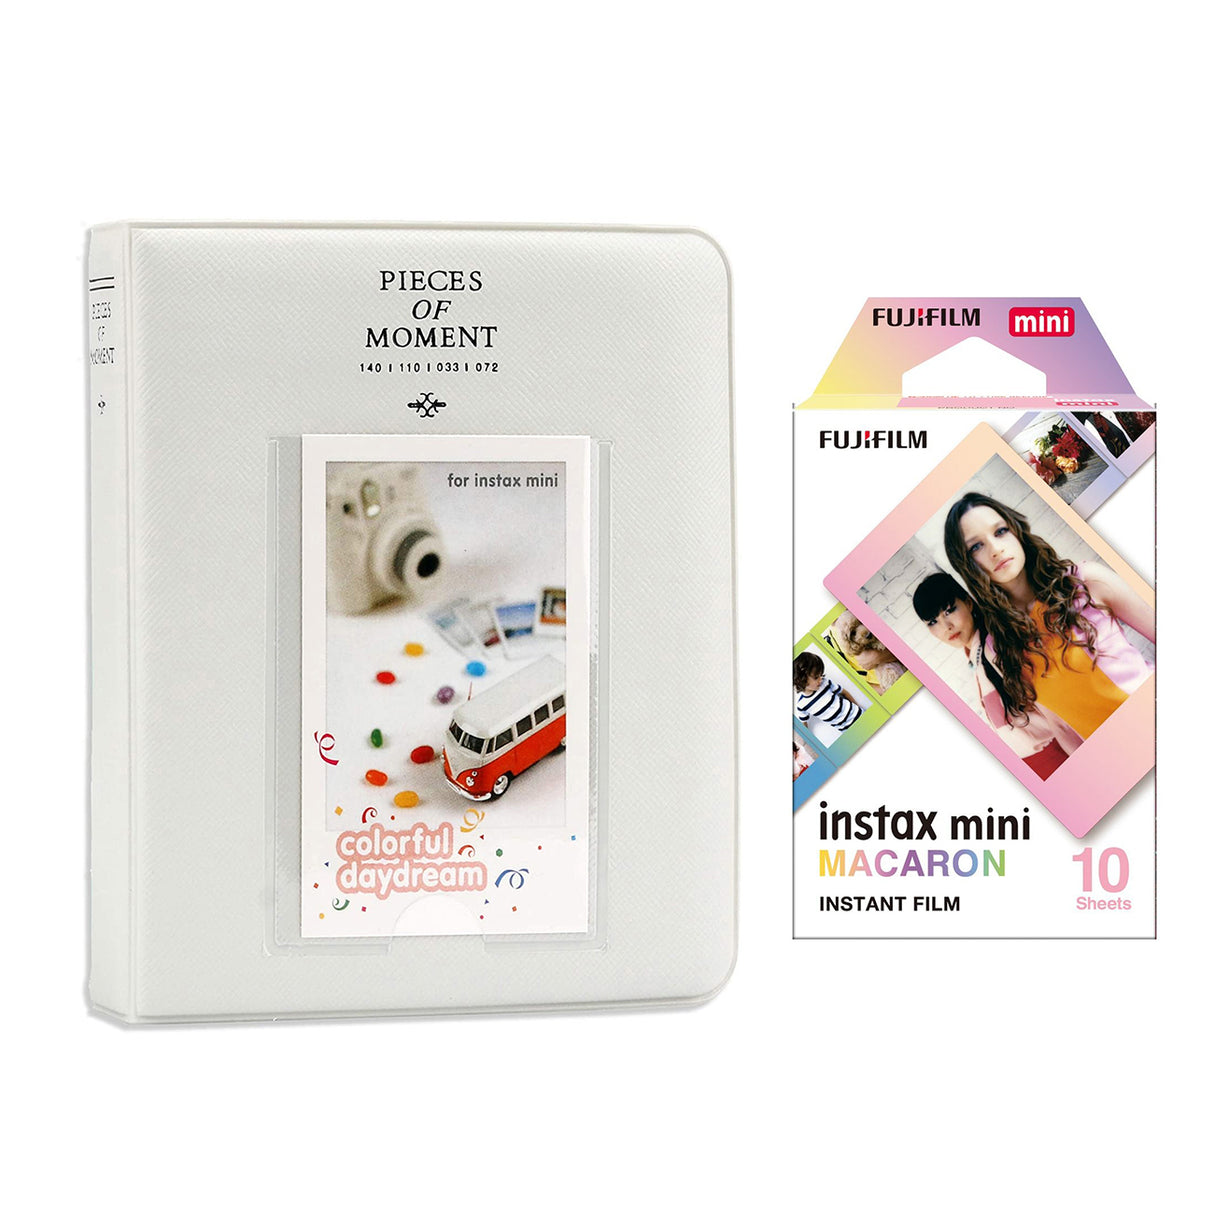 Fujifilm Instax Mini 10X1 macaron Instant Film with Instax Time Photo Album 64 Sheets Ice white